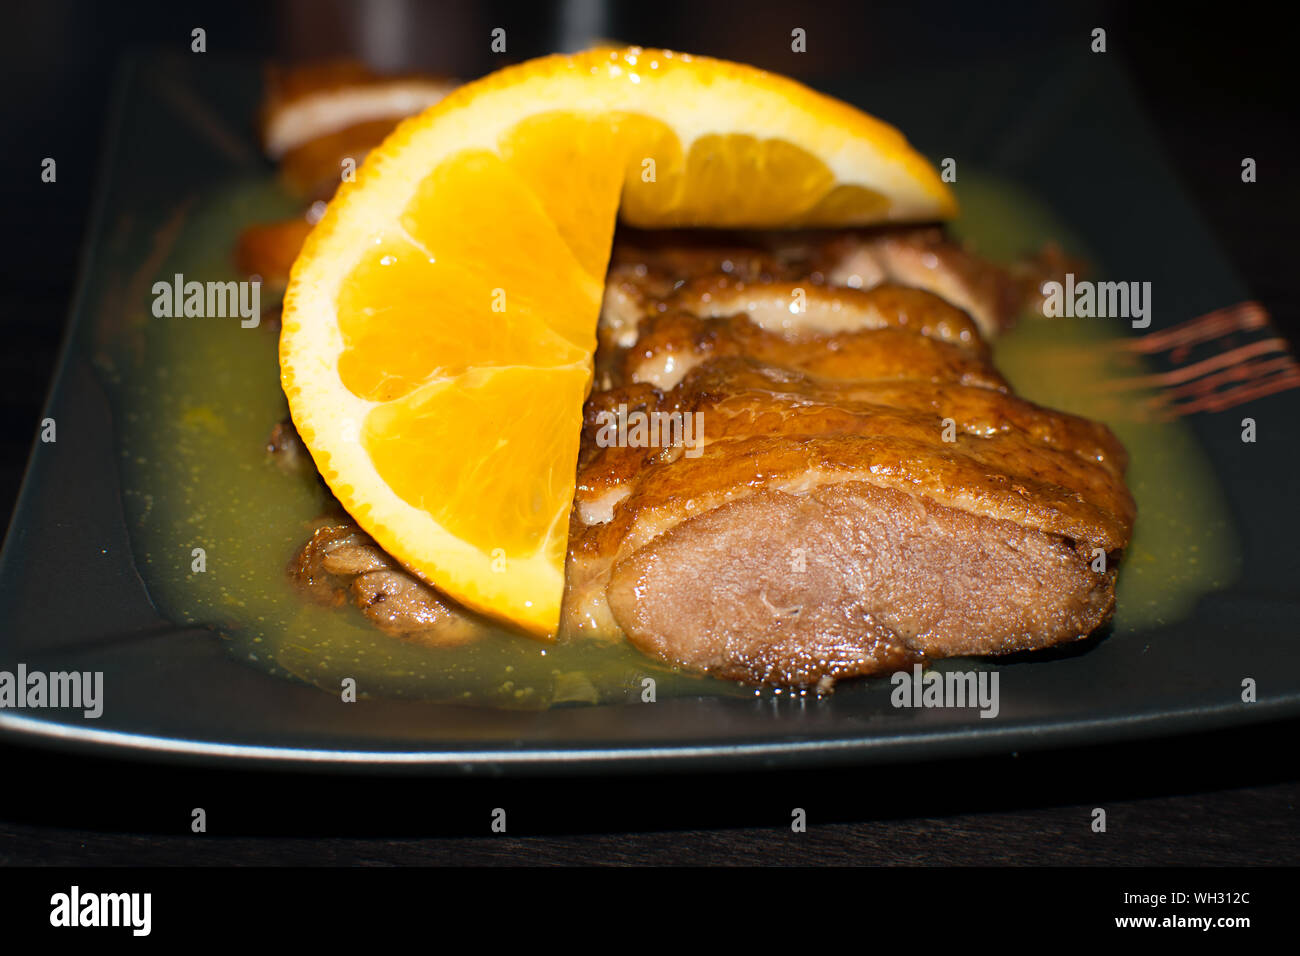 Photo en gros plan de le canard rôti servi avec sauce à l'orange et les tranches sur une assiette noire. Recette chinoise d'Orange duck. Espagne, 2019. Banque D'Images